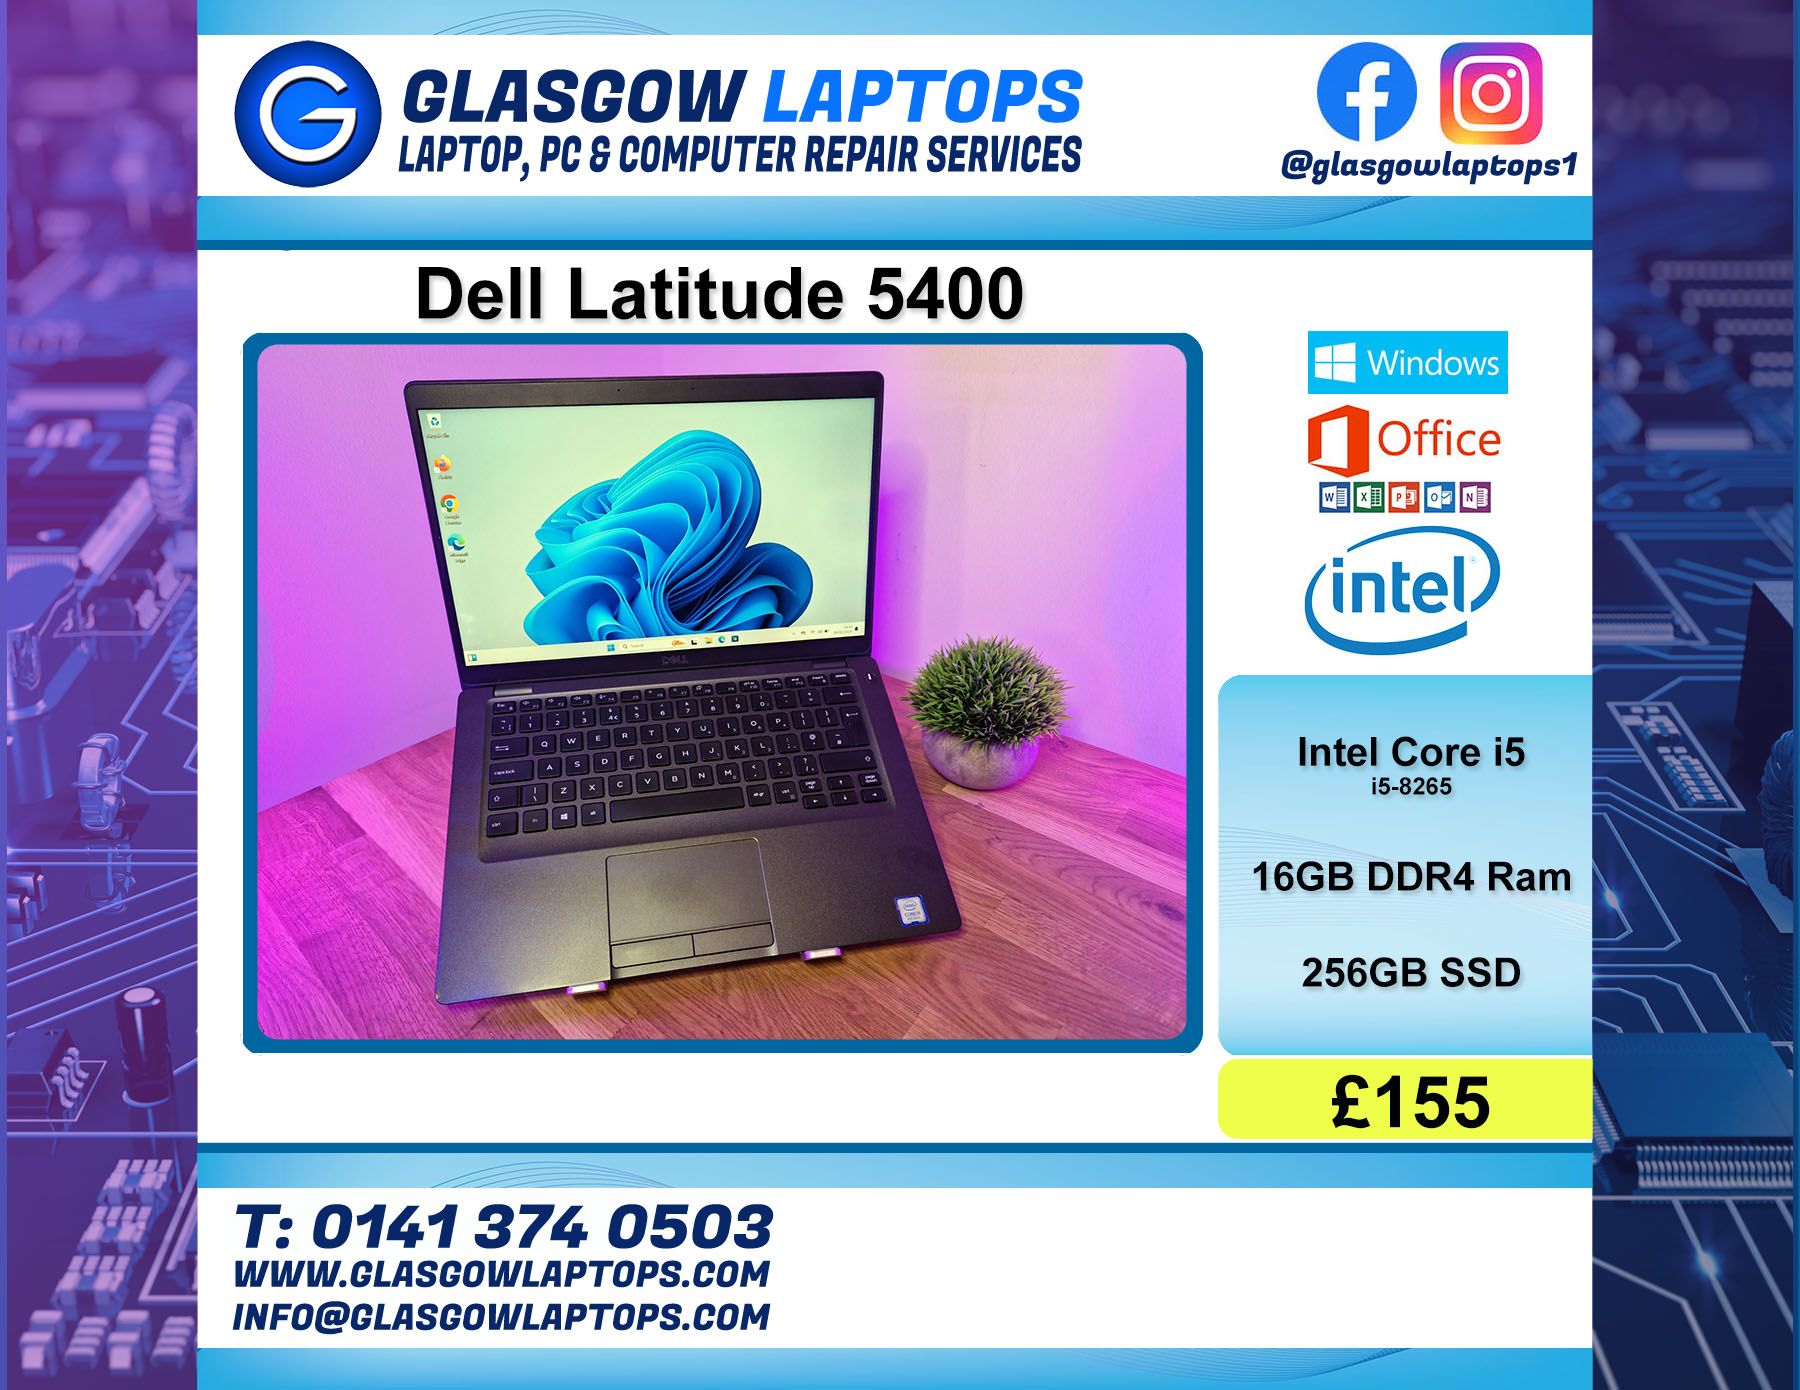 Refurbished Laptop For Sale